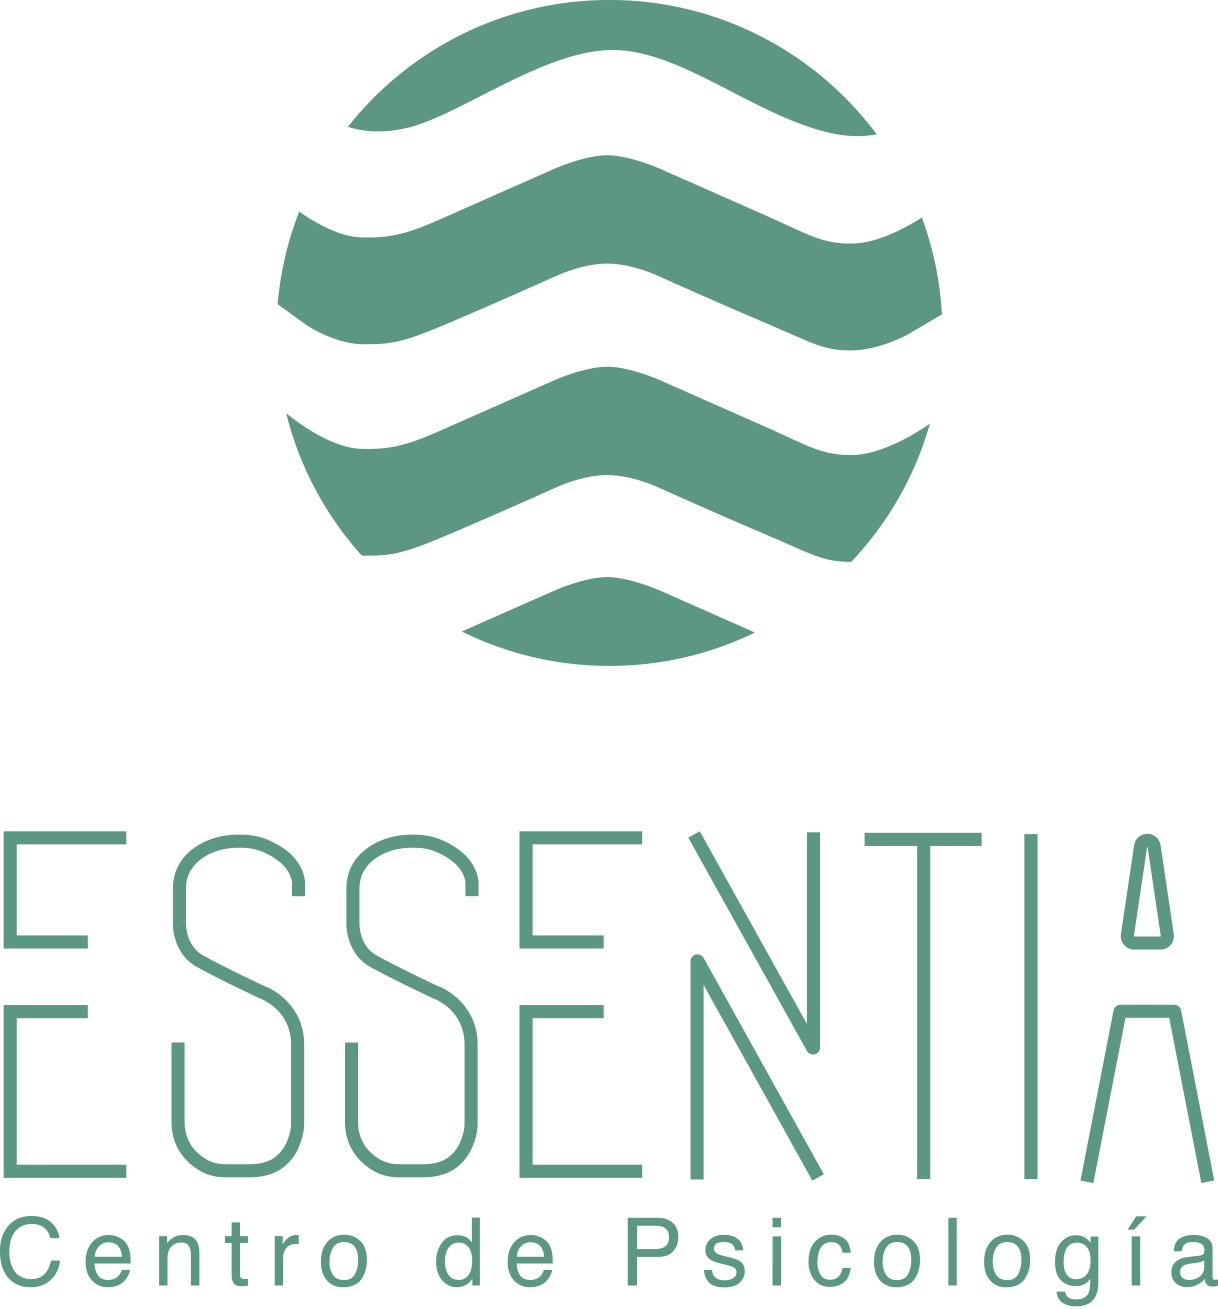 Centro Essentia Barcelona